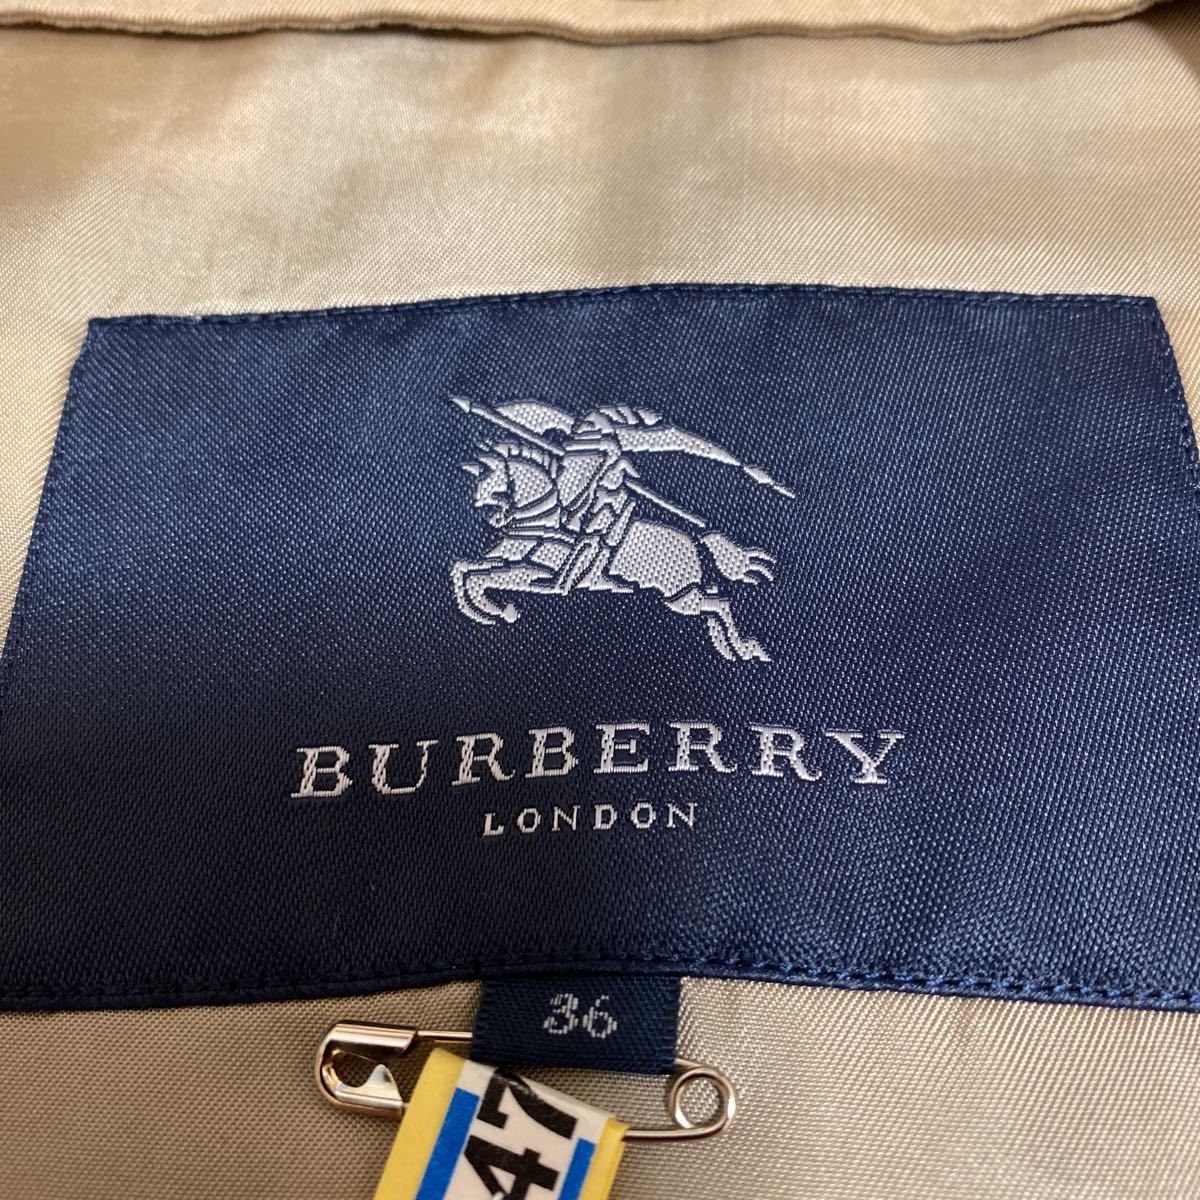  прекрасный товар * Burberry London подкладка имеется тренчкот 36*15 десять тысяч иен чистка settled 